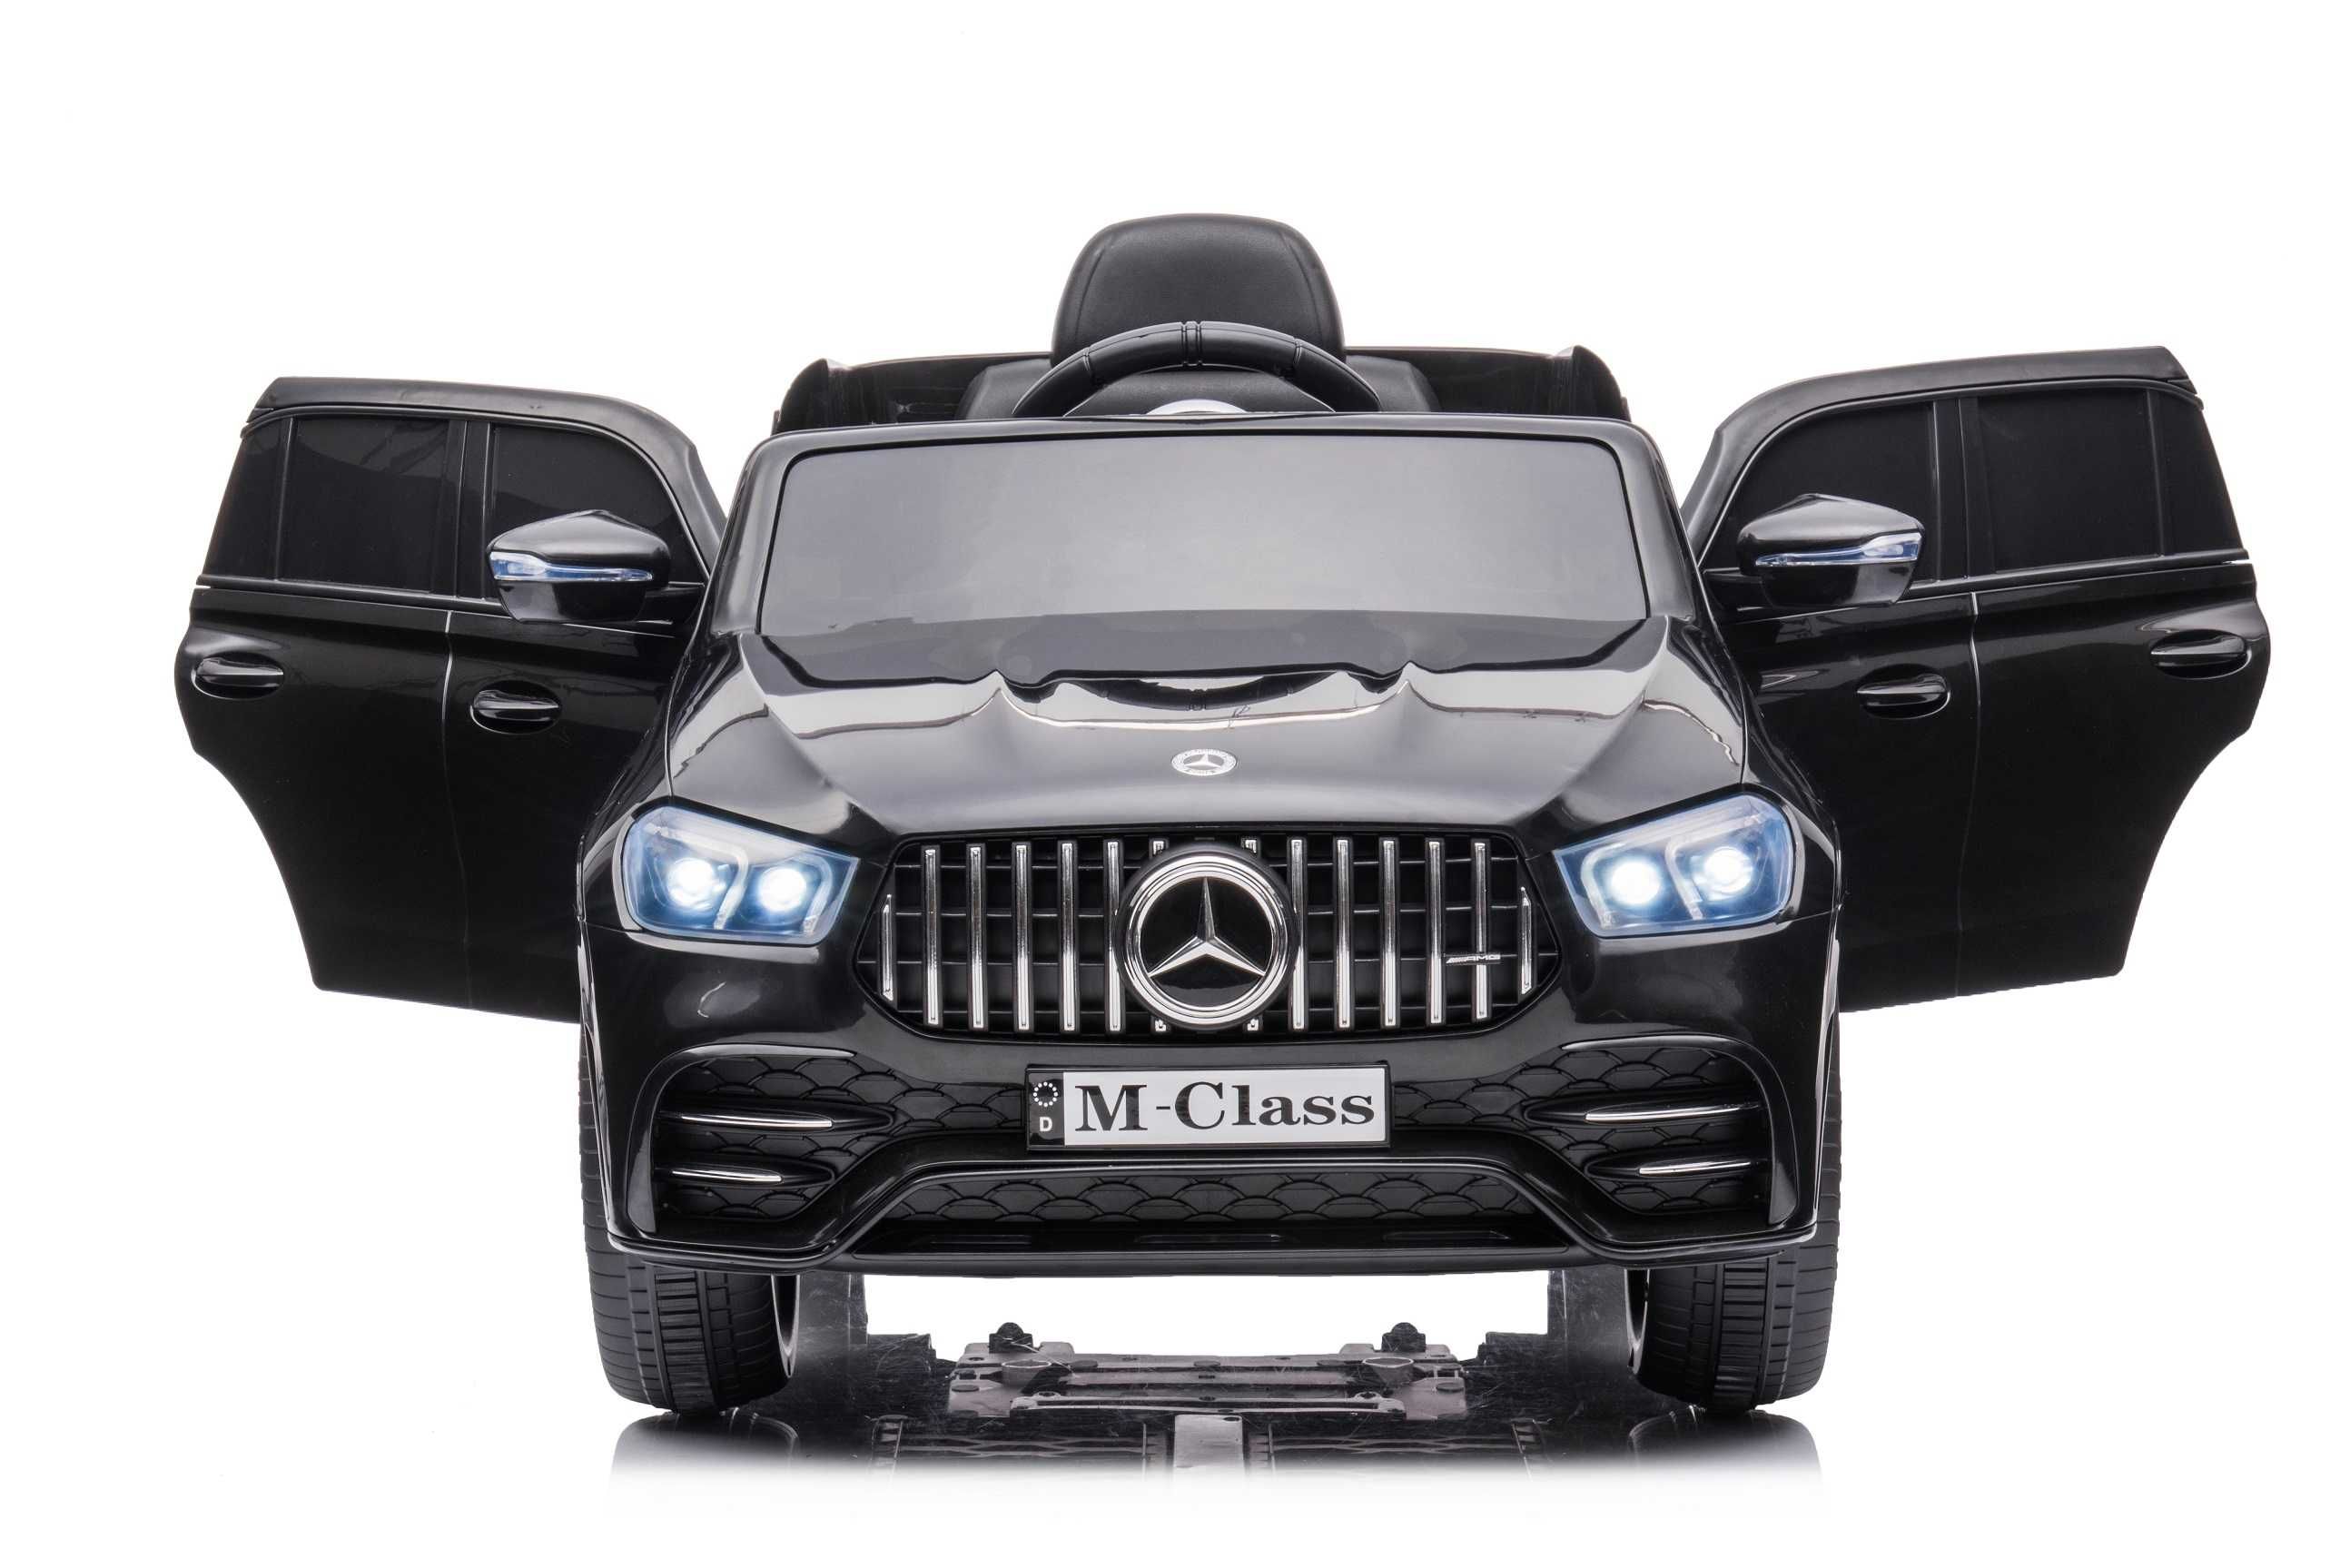 Masinuta electrica pt. copii Mercedes M-class 4 x35W 12V 10Ah #Black